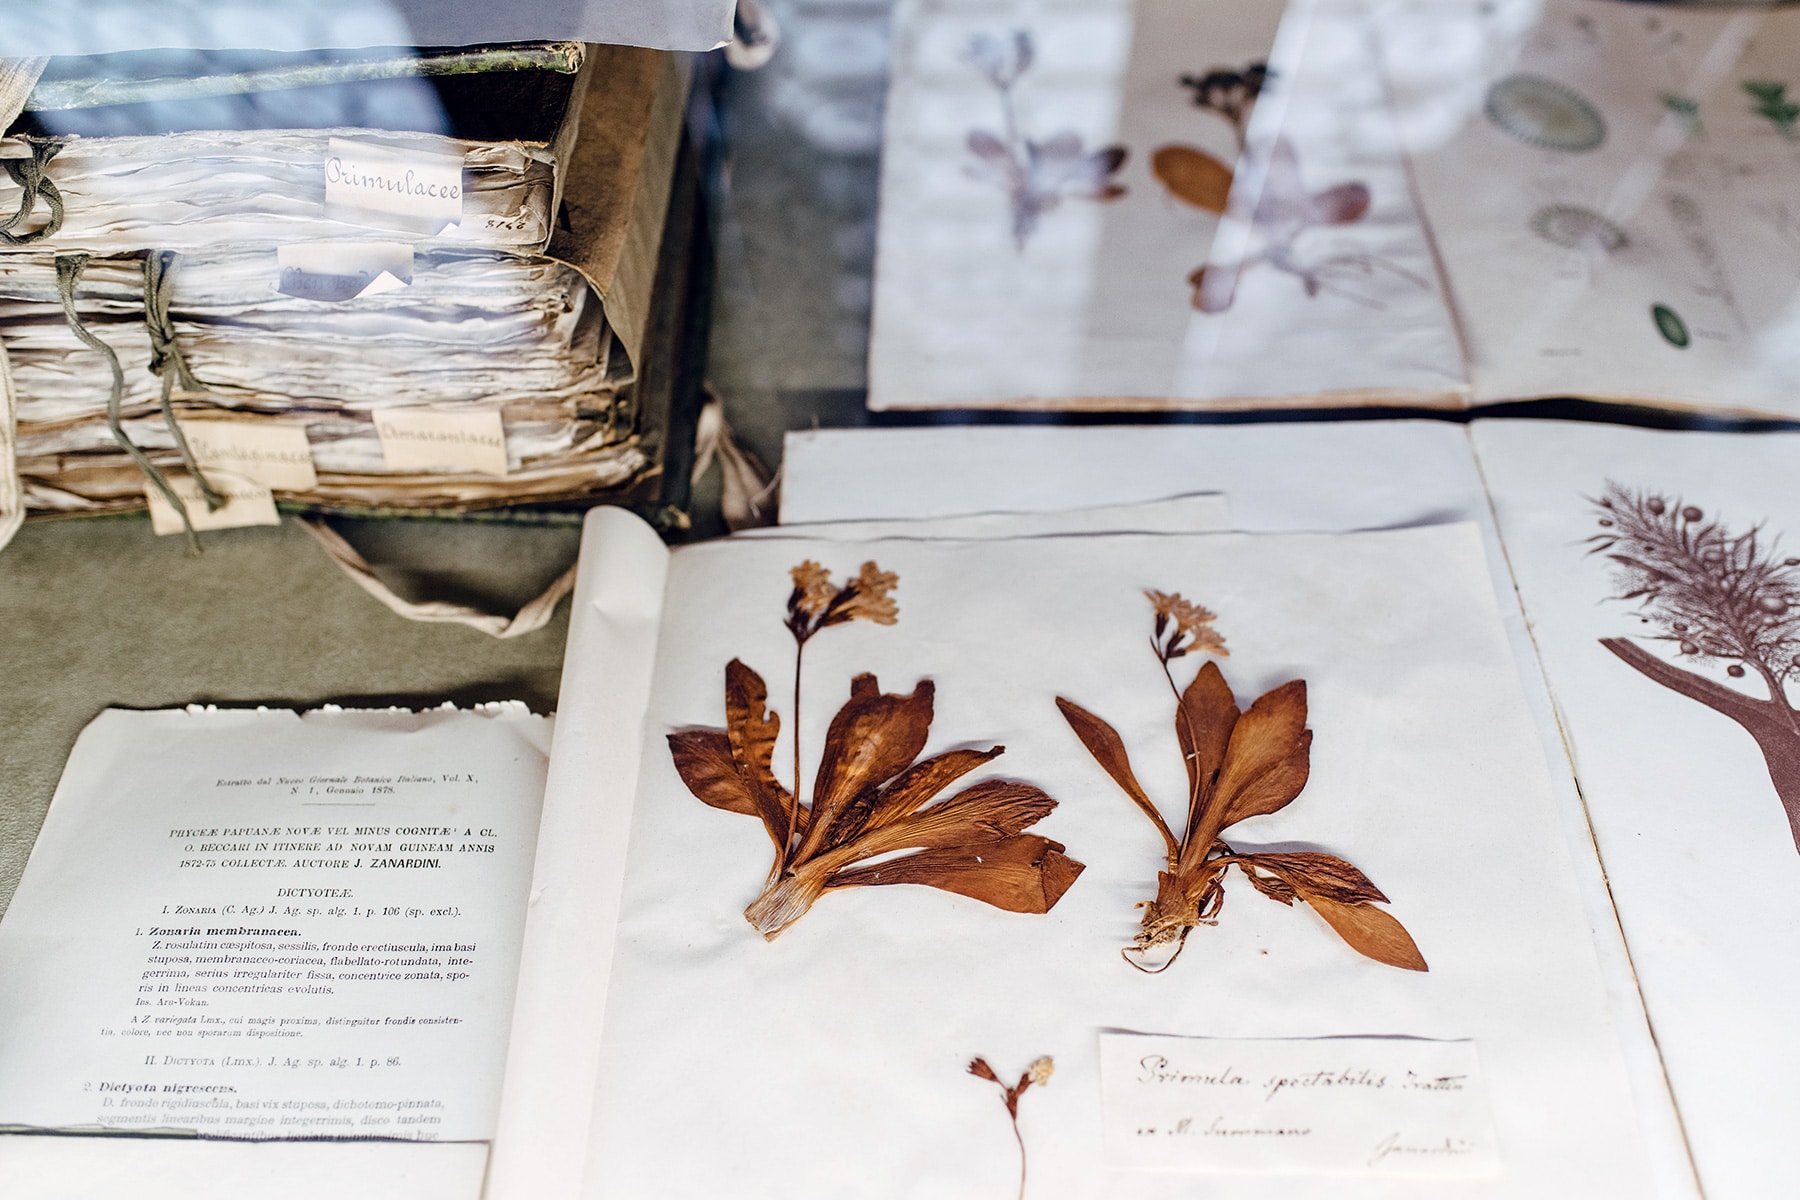 Musée d'histoire naturelle de Venise: herbier avec pages manuscrites et fleurs séchées